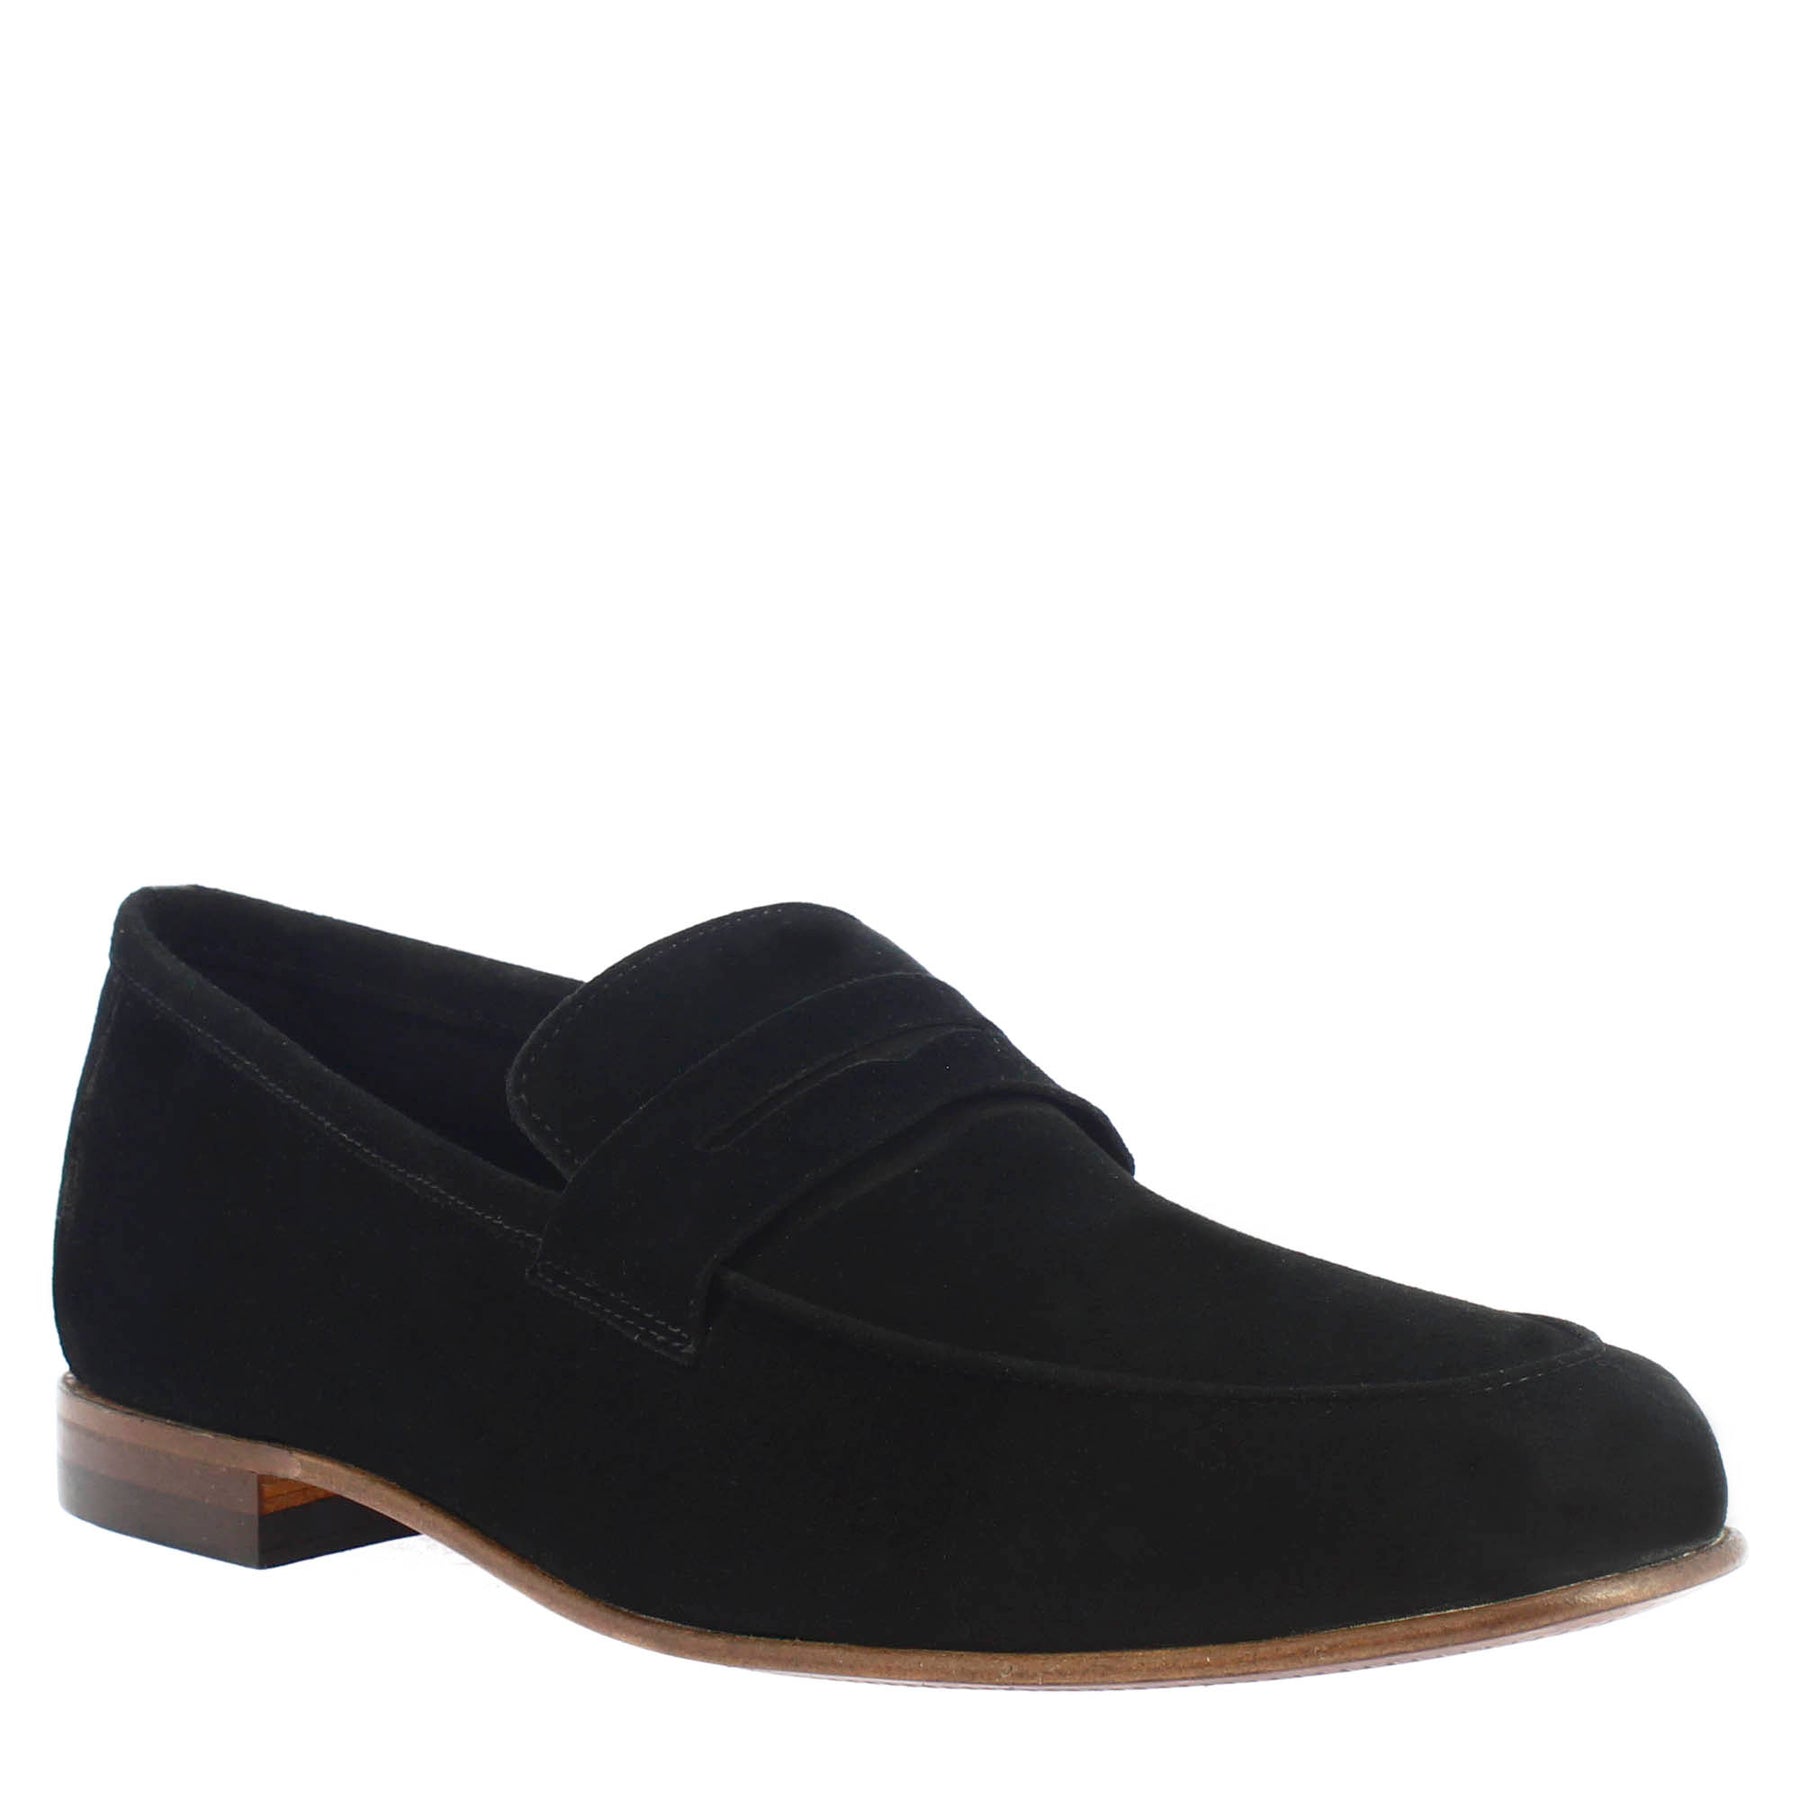 Black suede men's pocket style loafer 